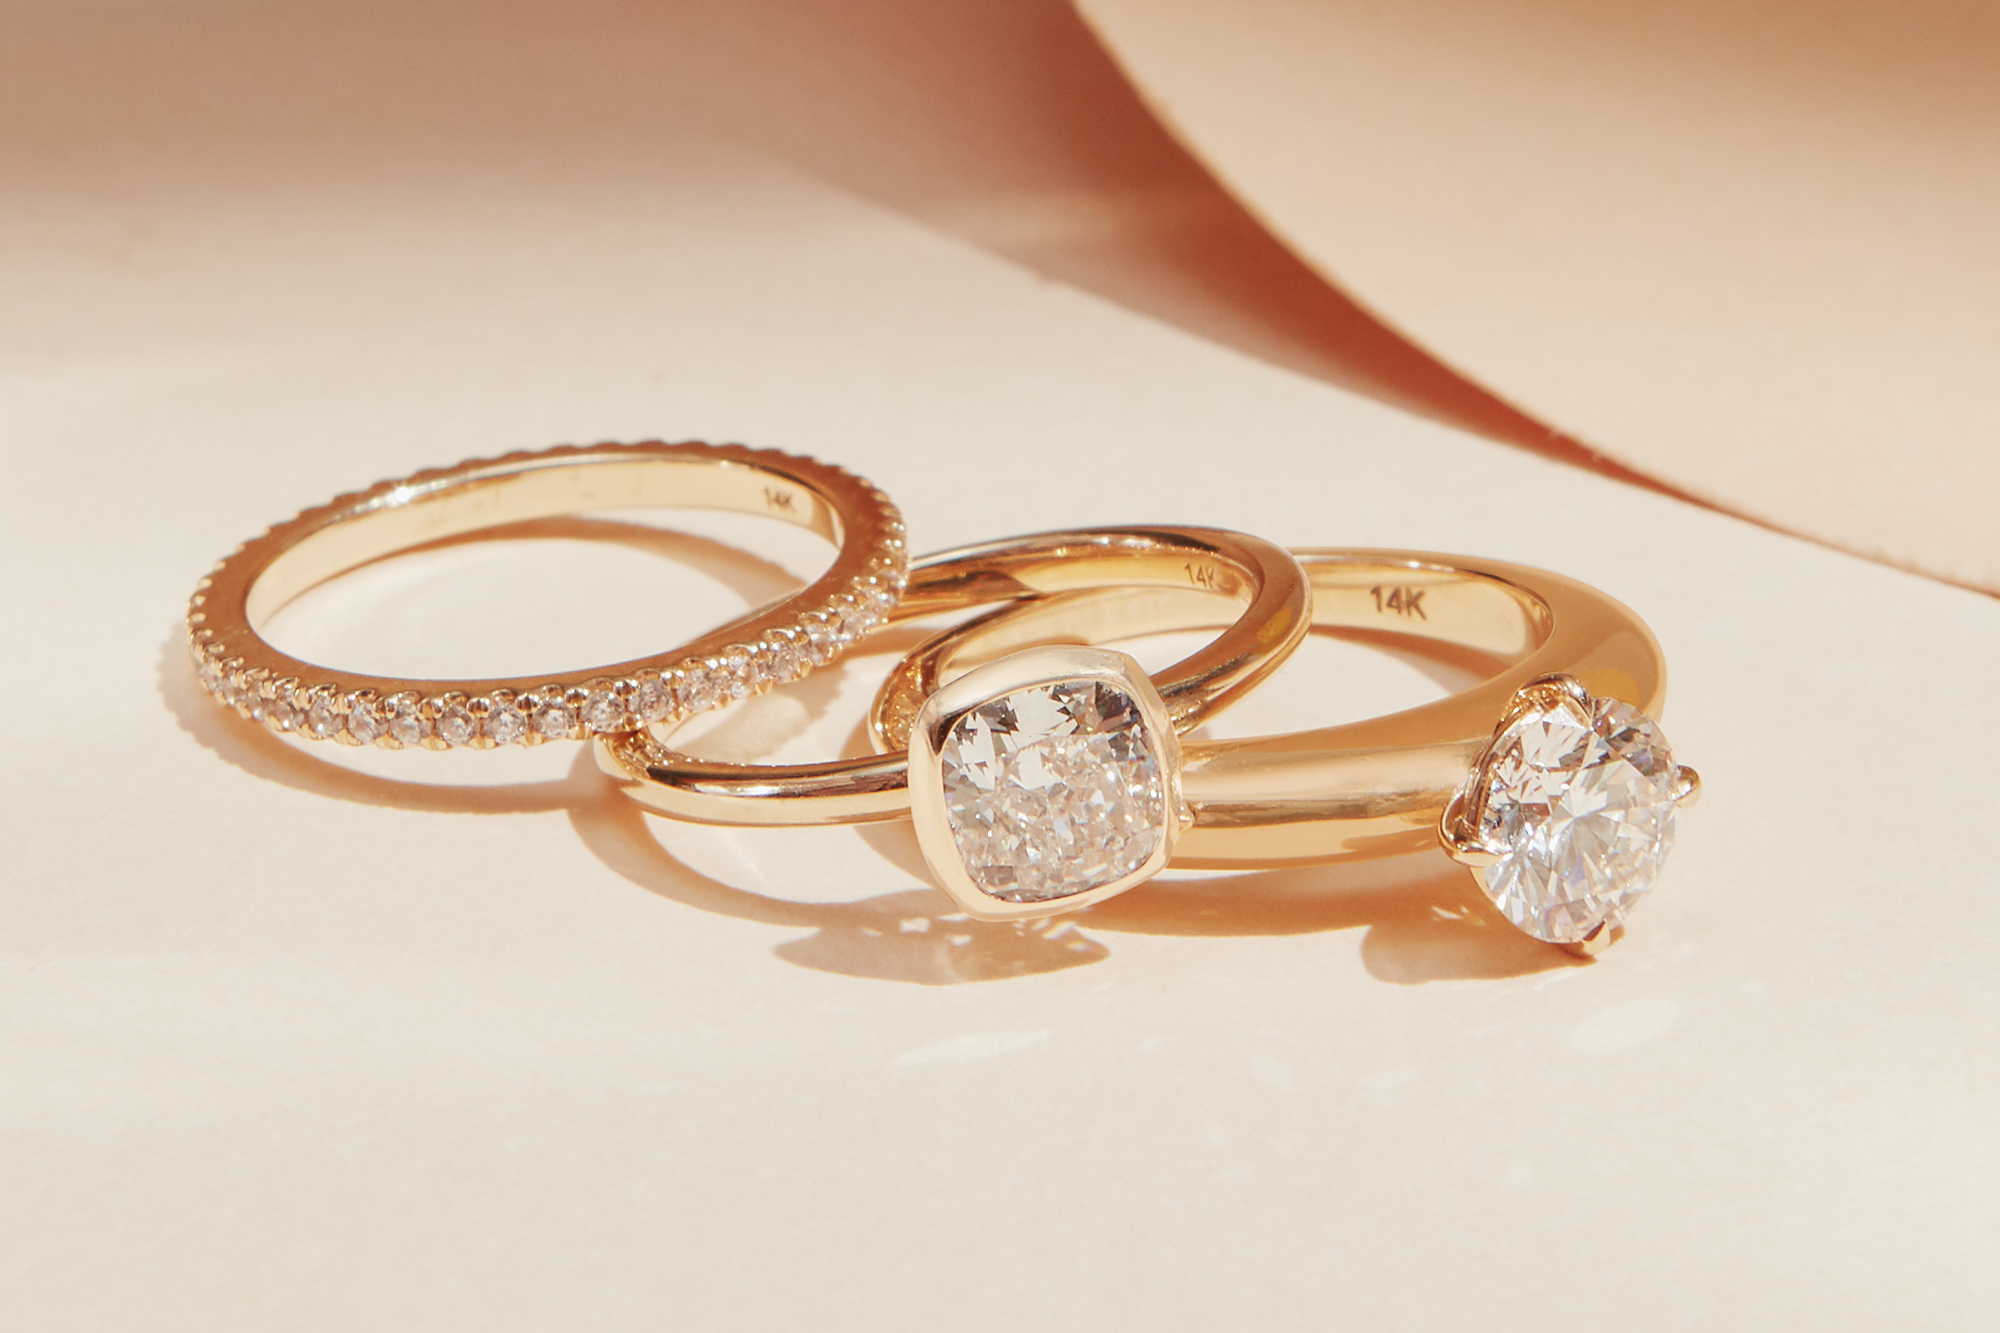 Flower Inspired Wedding Ring, White Gold Bridal set ADLR166S